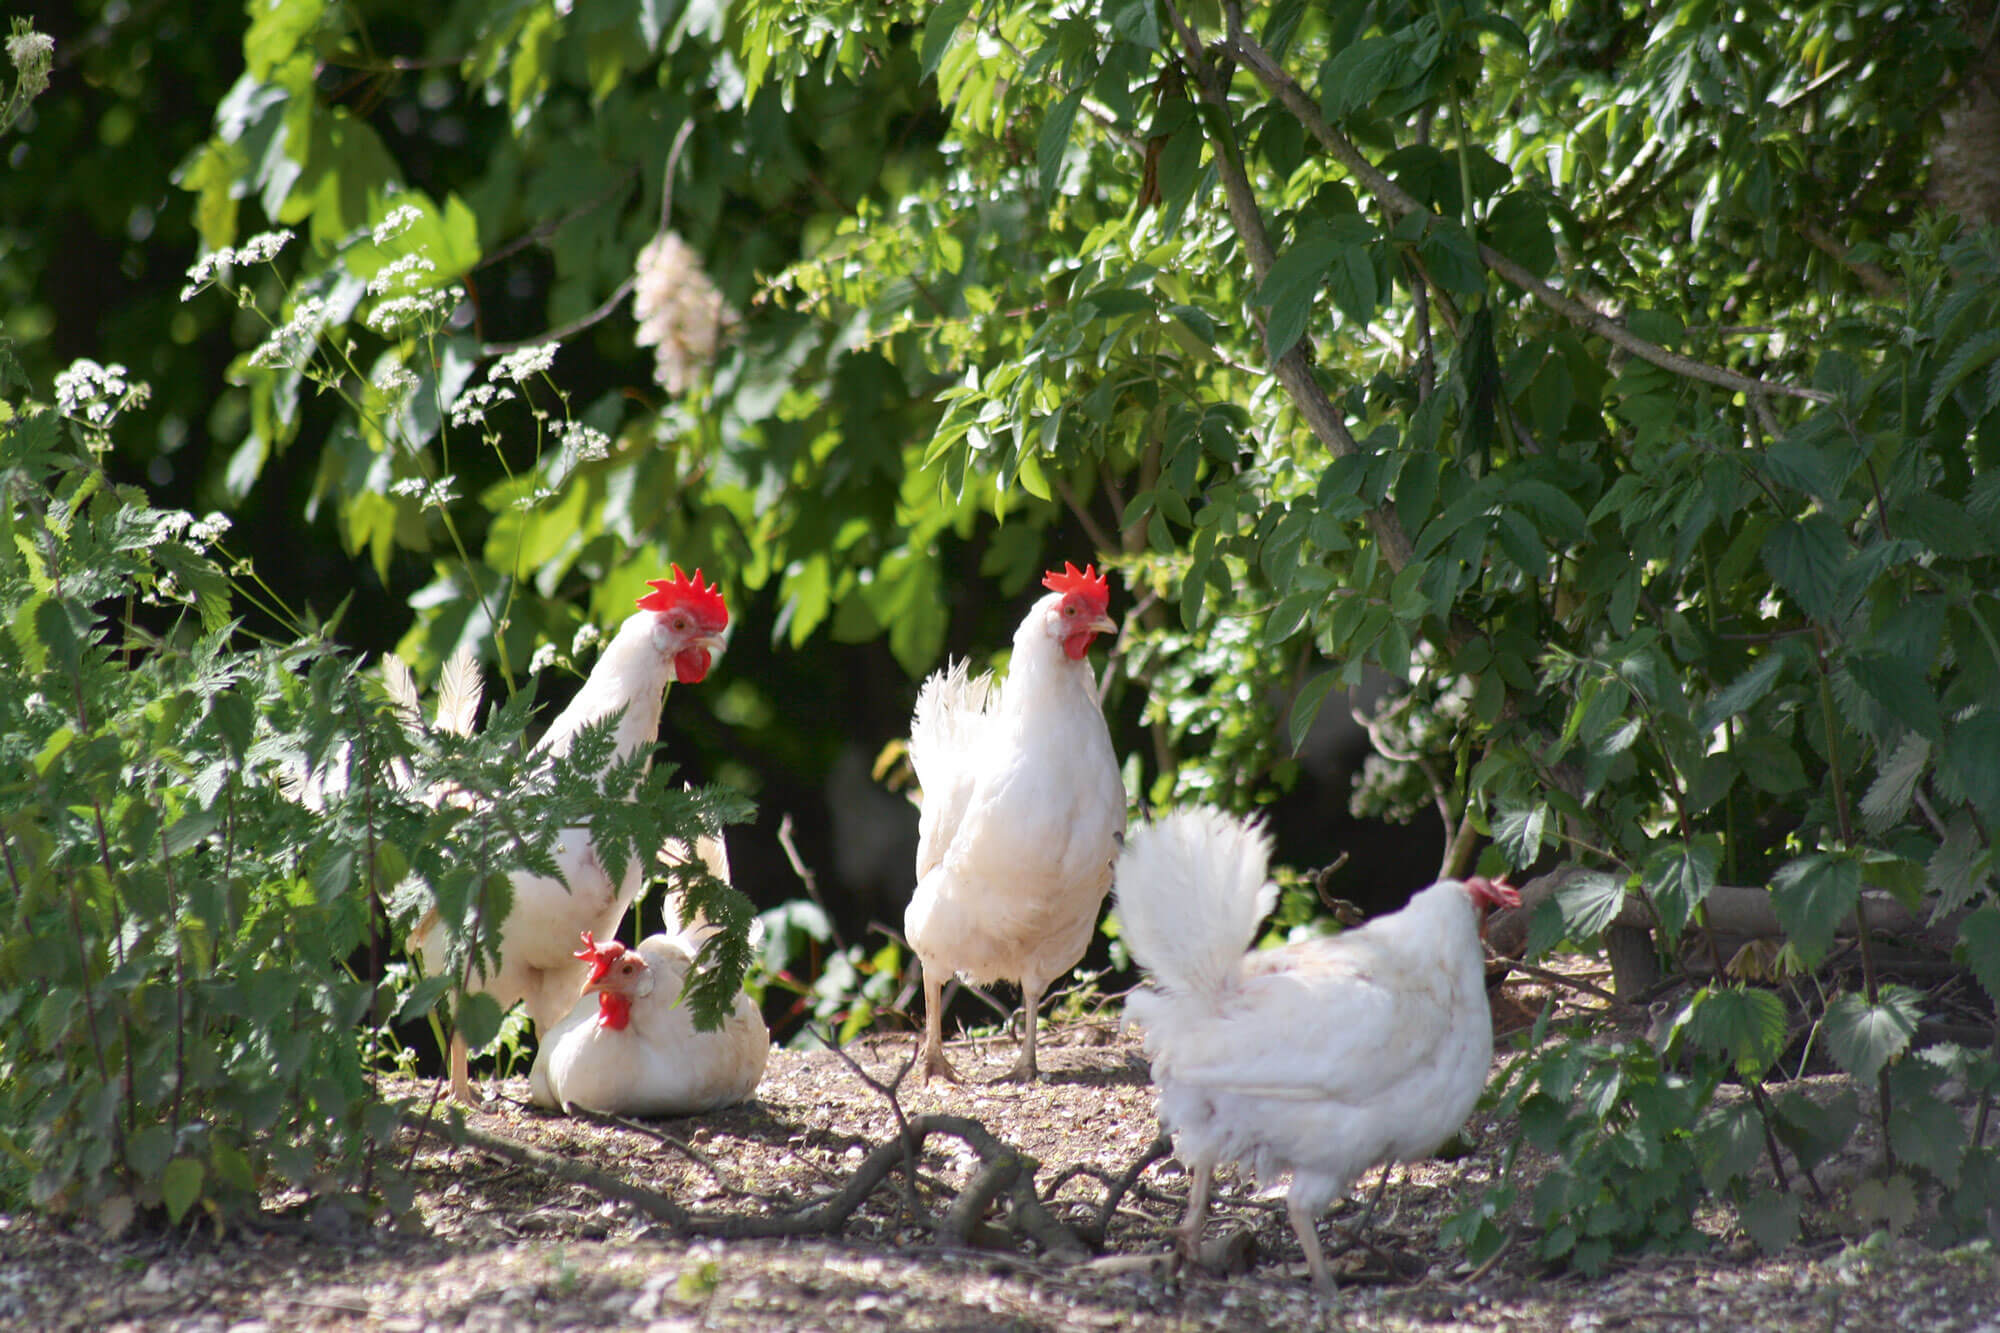 Fire fritgående høns går mellem buske og træer i deres hønsegård.